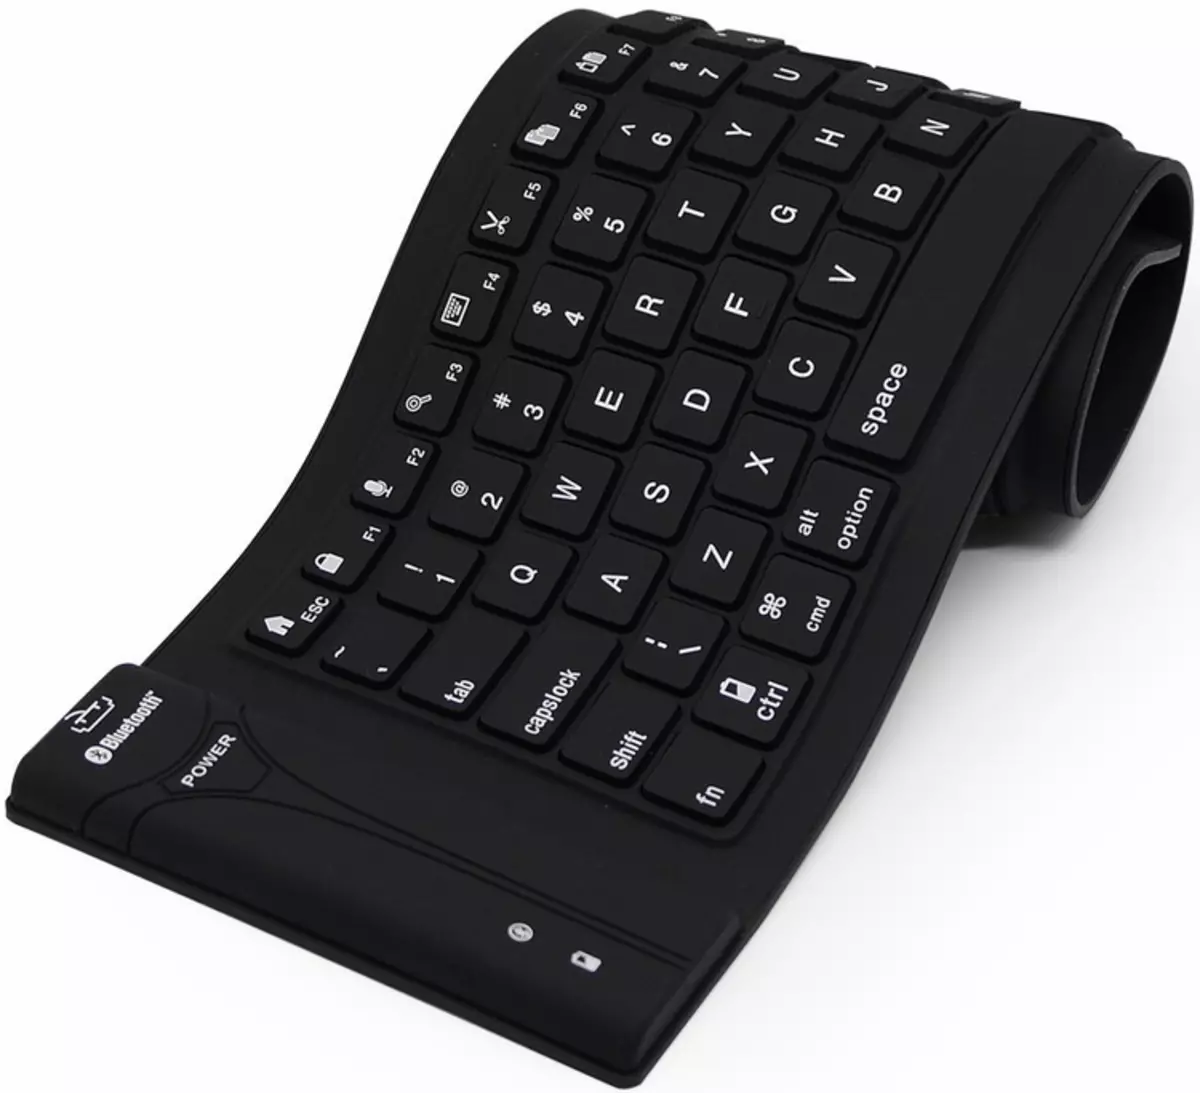 Um exemplo de um teclado de borracha